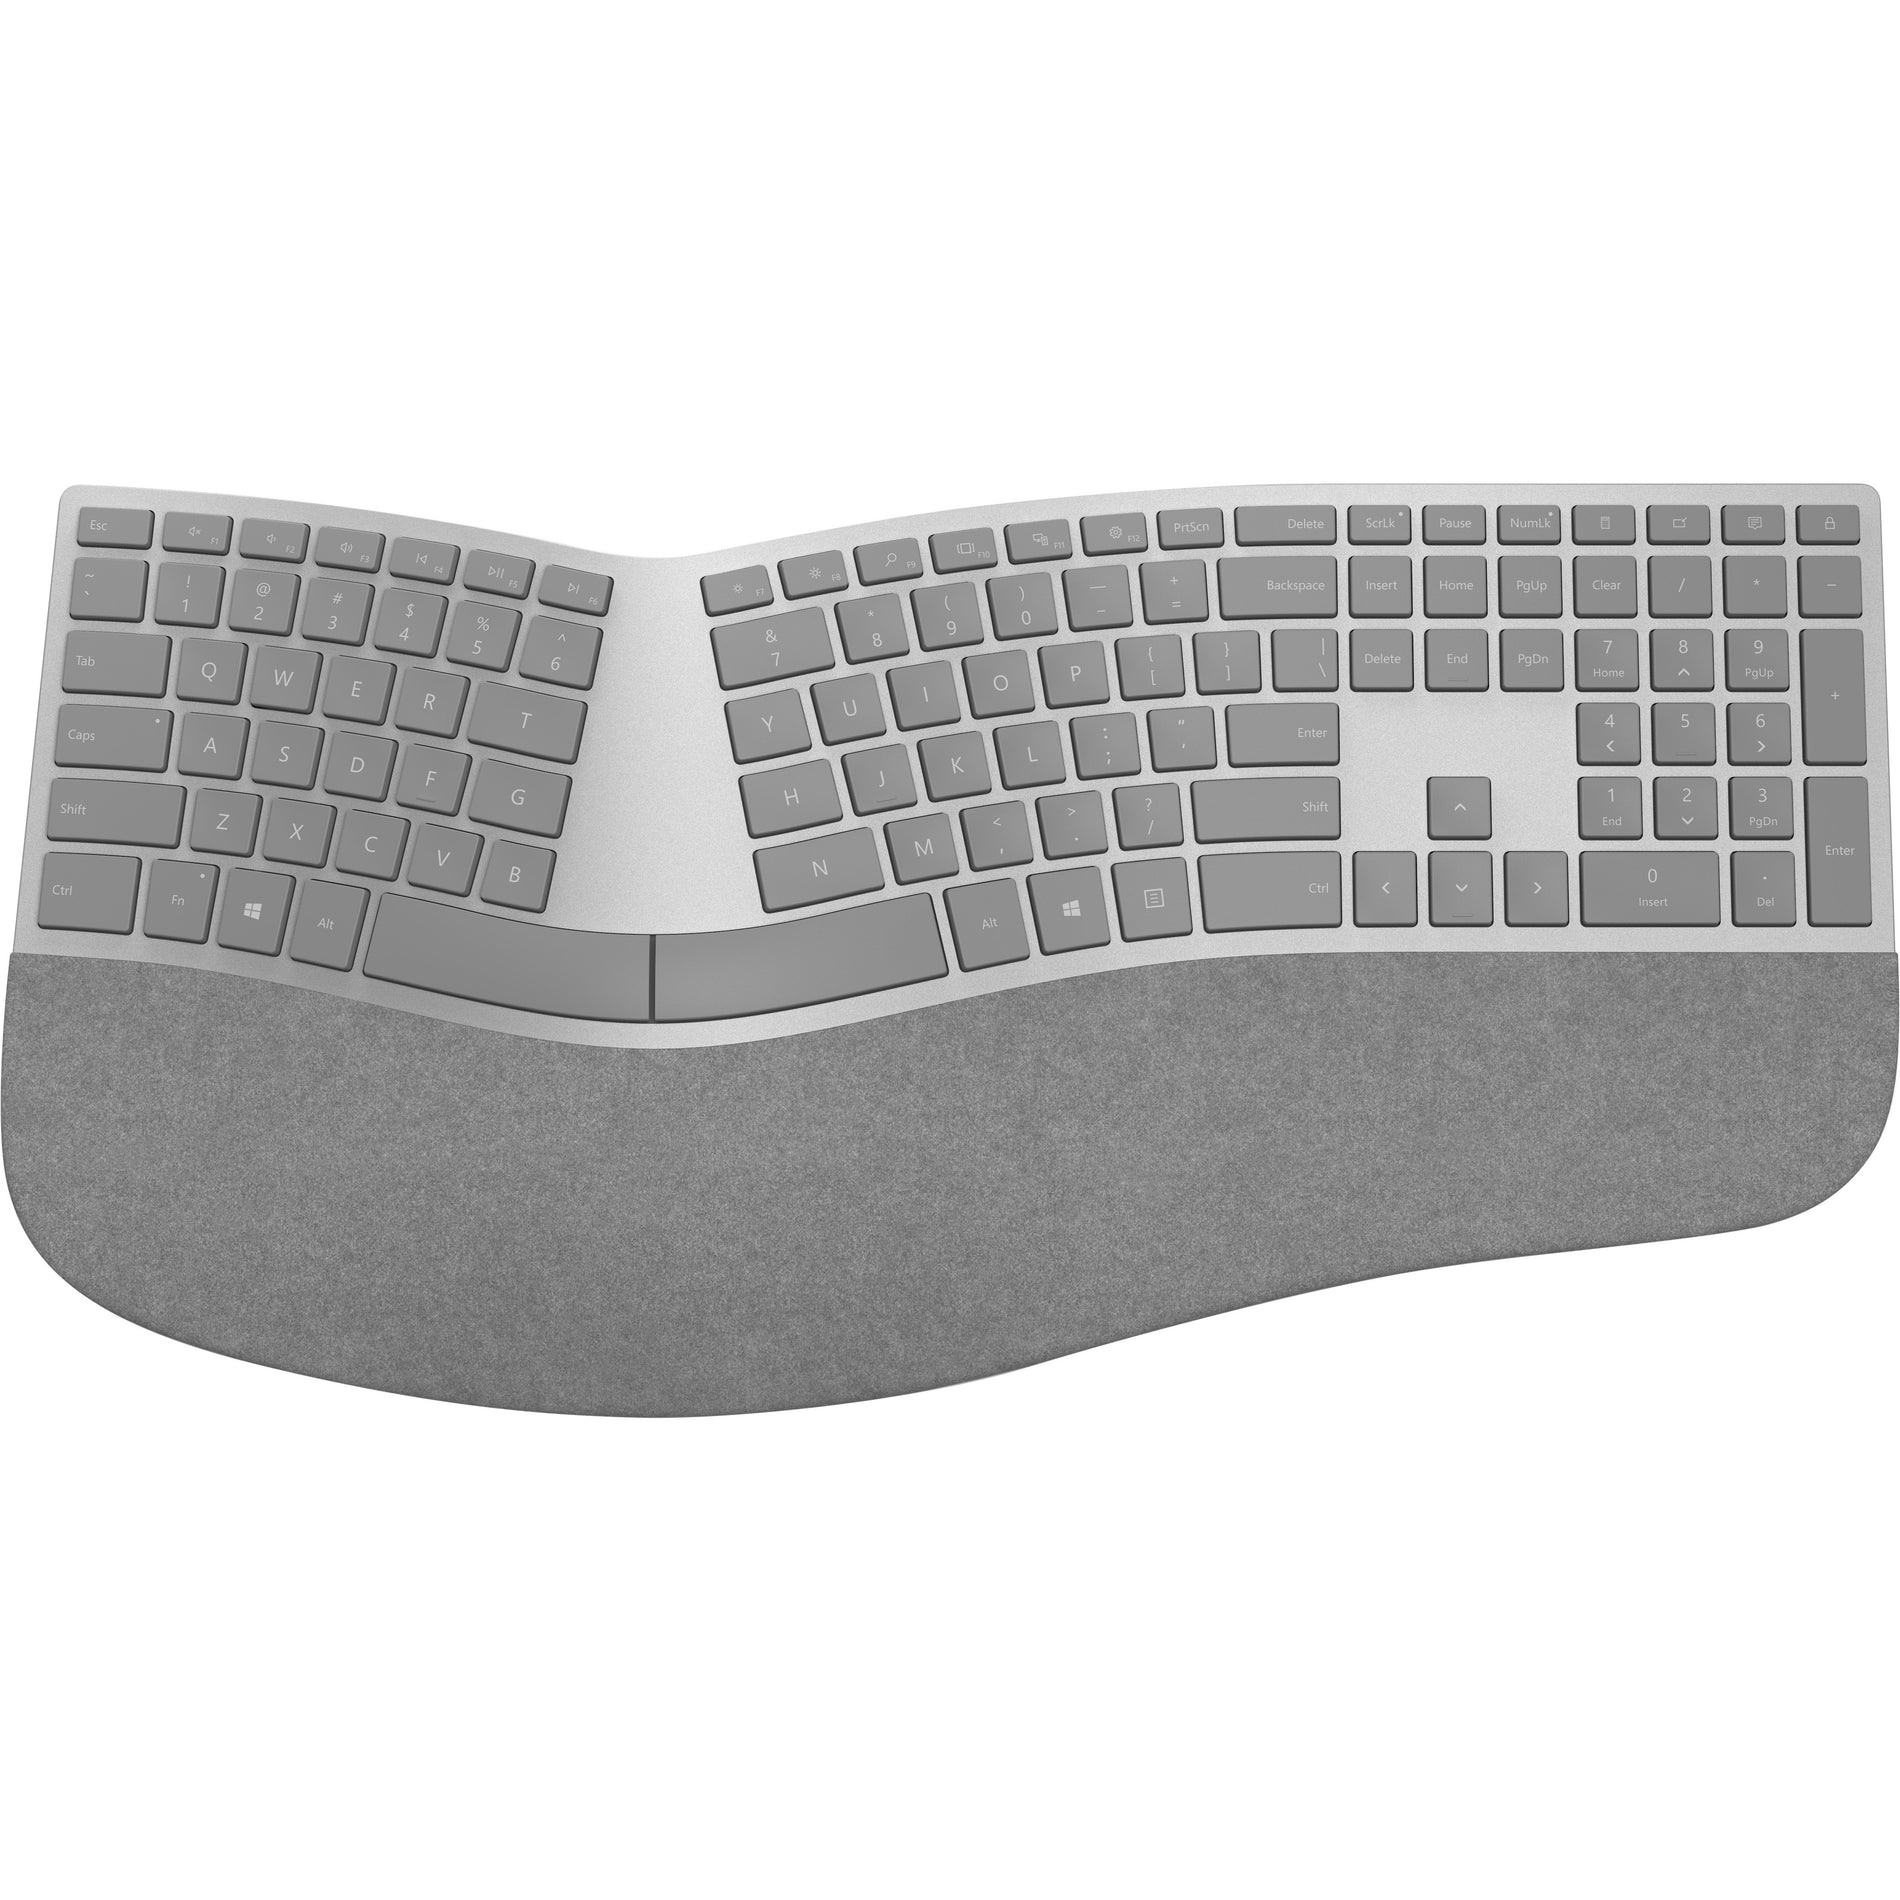 Microsoft 3SQ-00008 Surface Ergonomic Keyboard, Bluetooth Wireless Gray, QWERTY Keys Layout